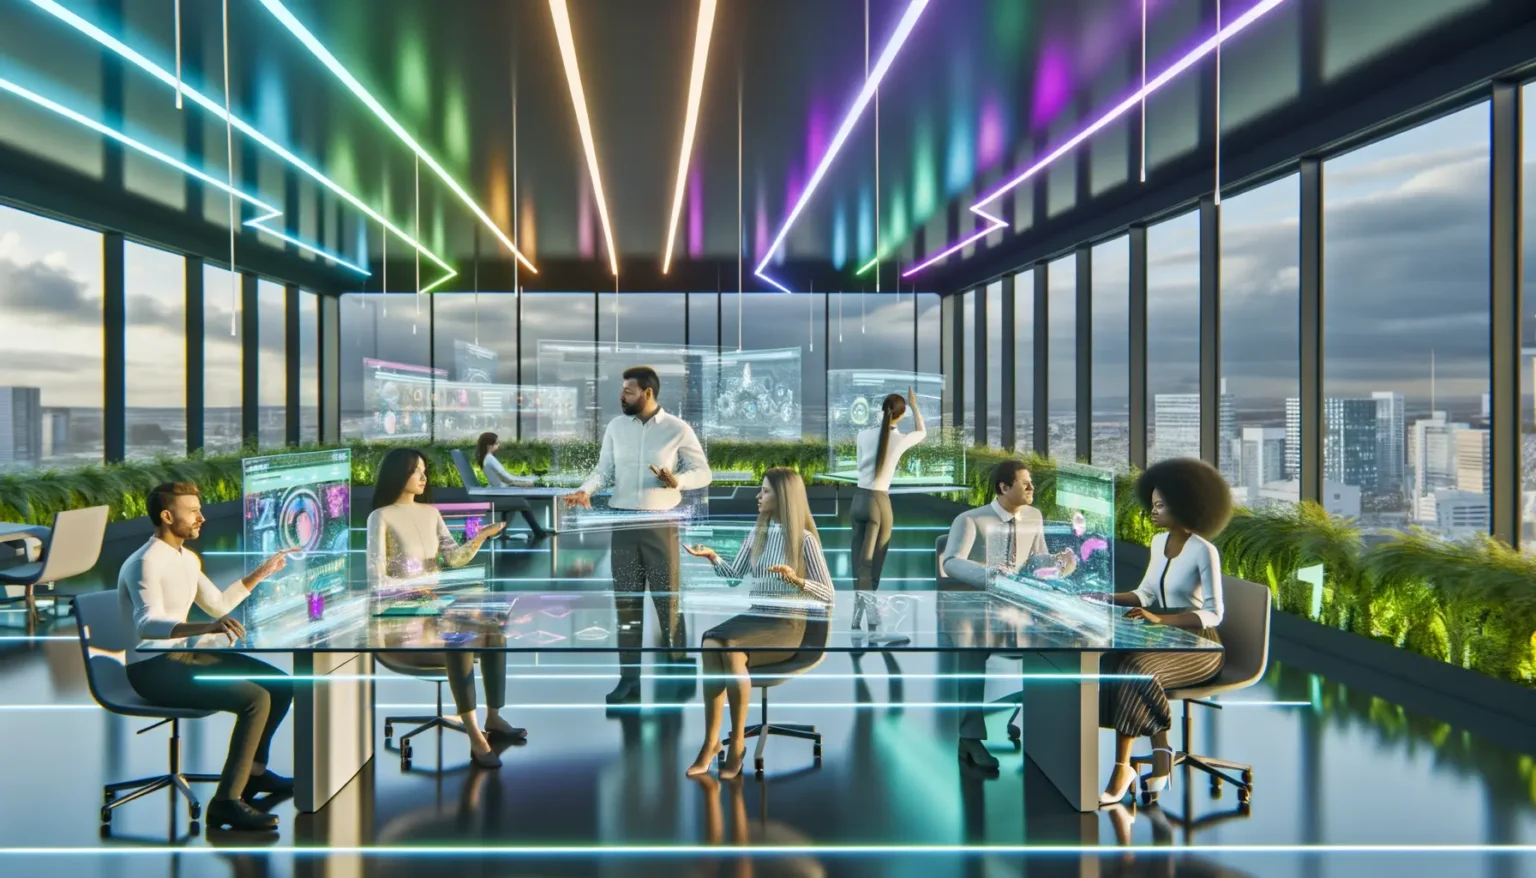 Ein futuristisches Büro, in dem Personen an transparenten, beleuchteten Arbeitsstationen interagieren. Überall in dem Raum verlaufen Neonlichter und holographische Bildschirme. Durch die Fensterfront sieht man eine moderne Stadtlandschaft bei Tageslicht.